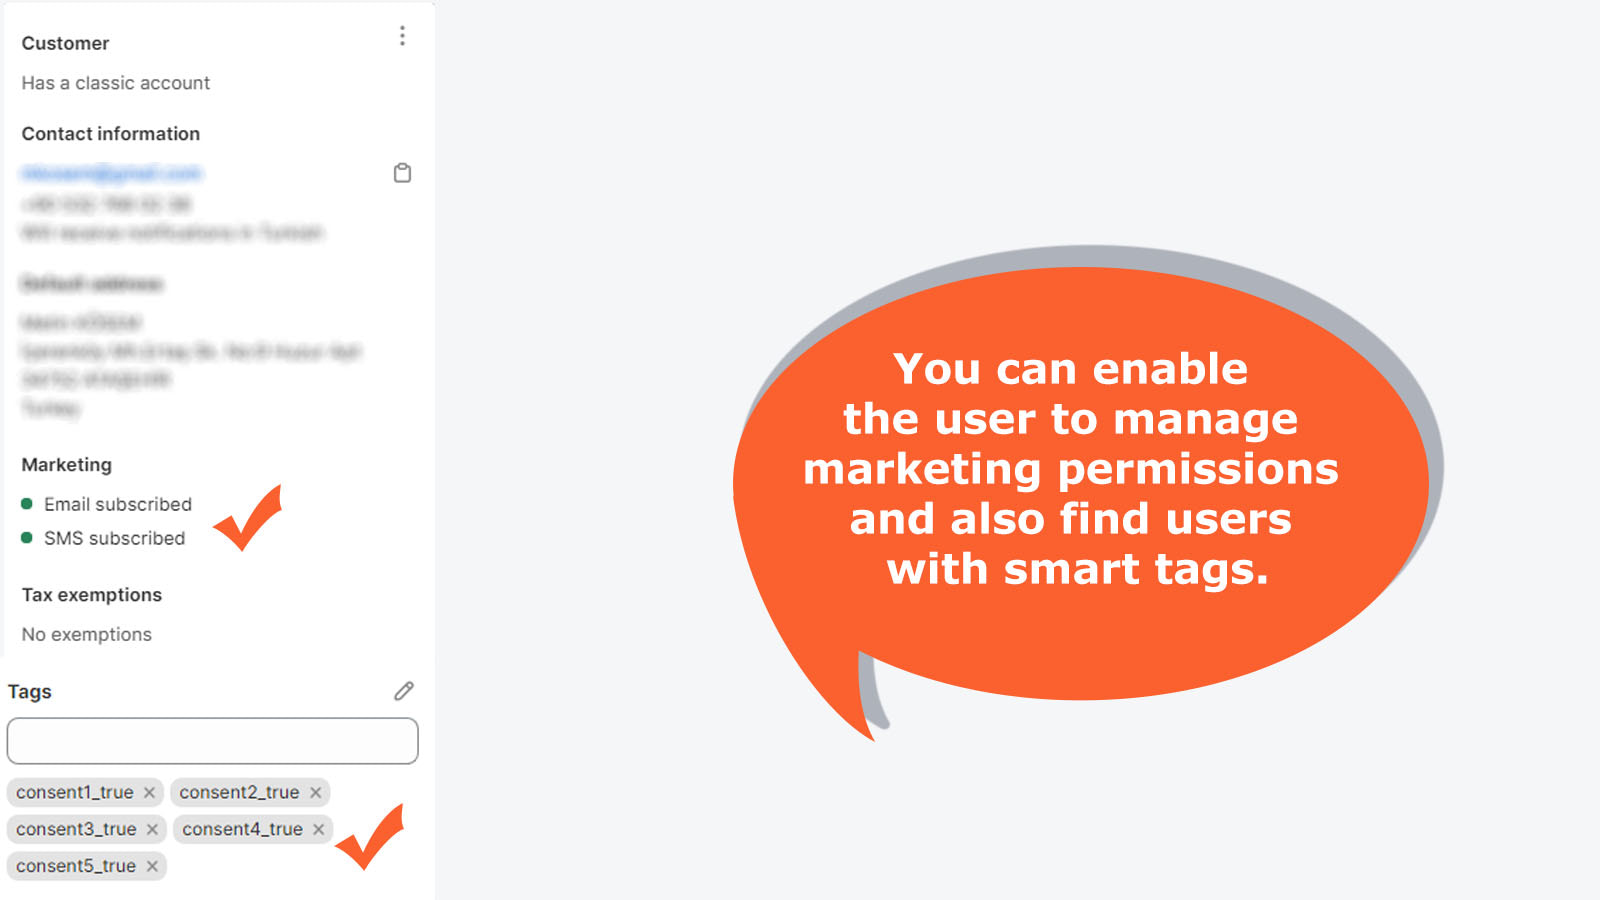 您可以使用戶能夠管理行銷權限並尋找具有智慧標籤的用戶。